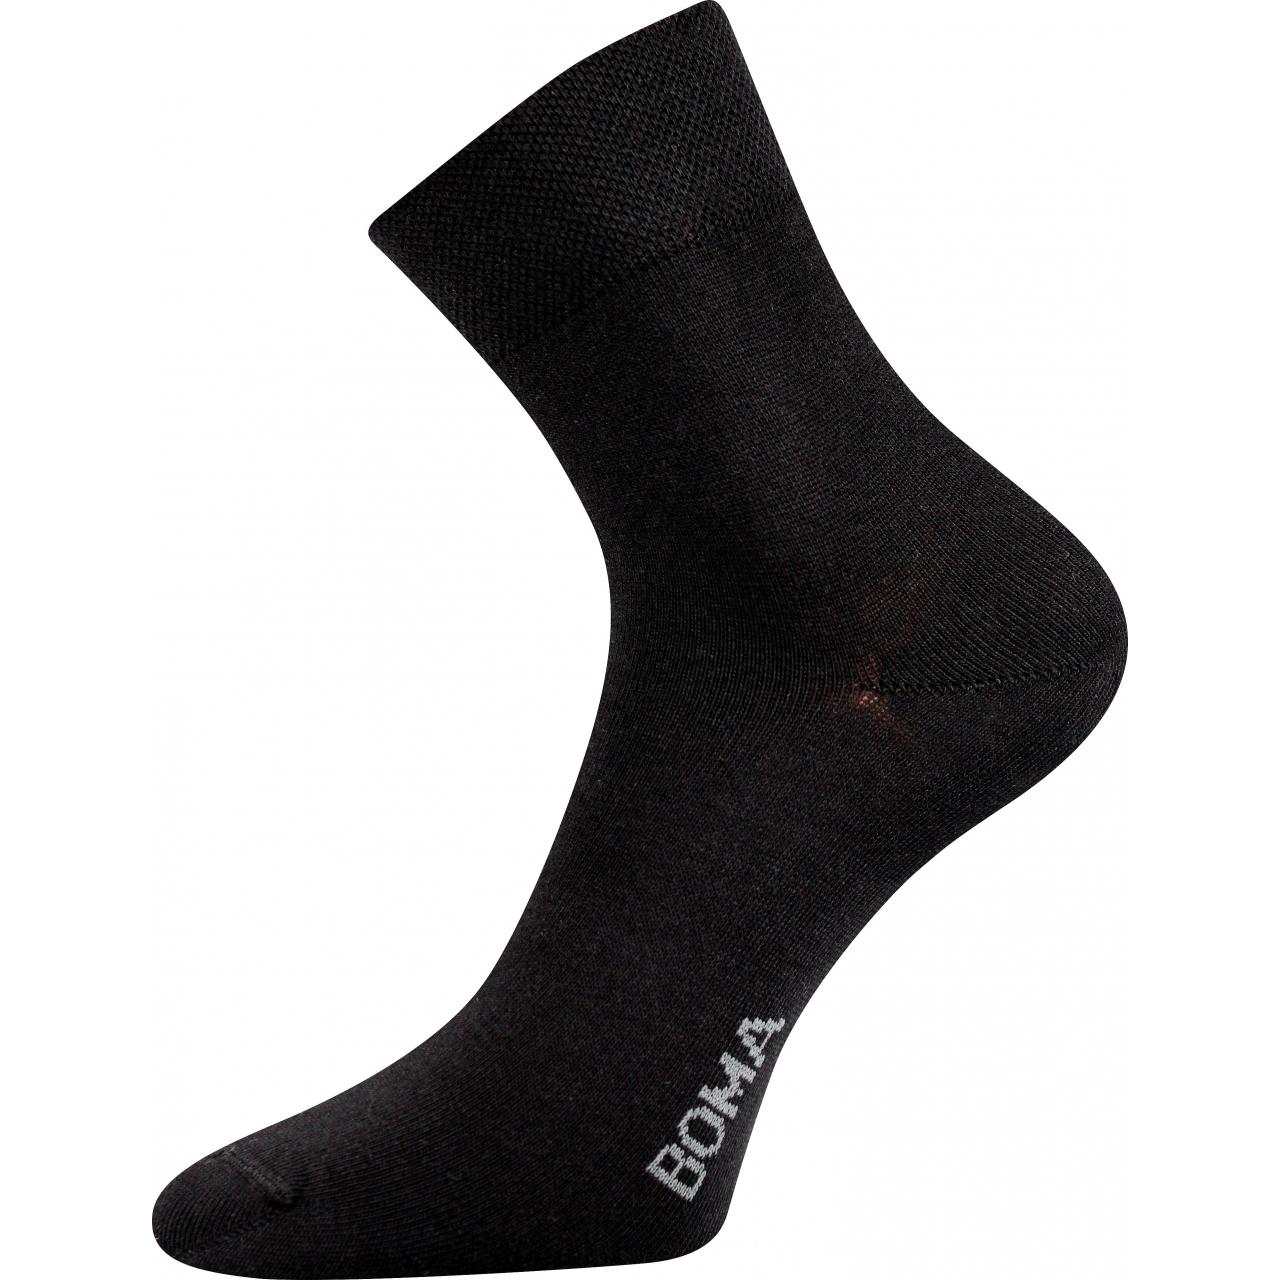 Ponožky unisex klasické Boma Zazr - černé, 39-42